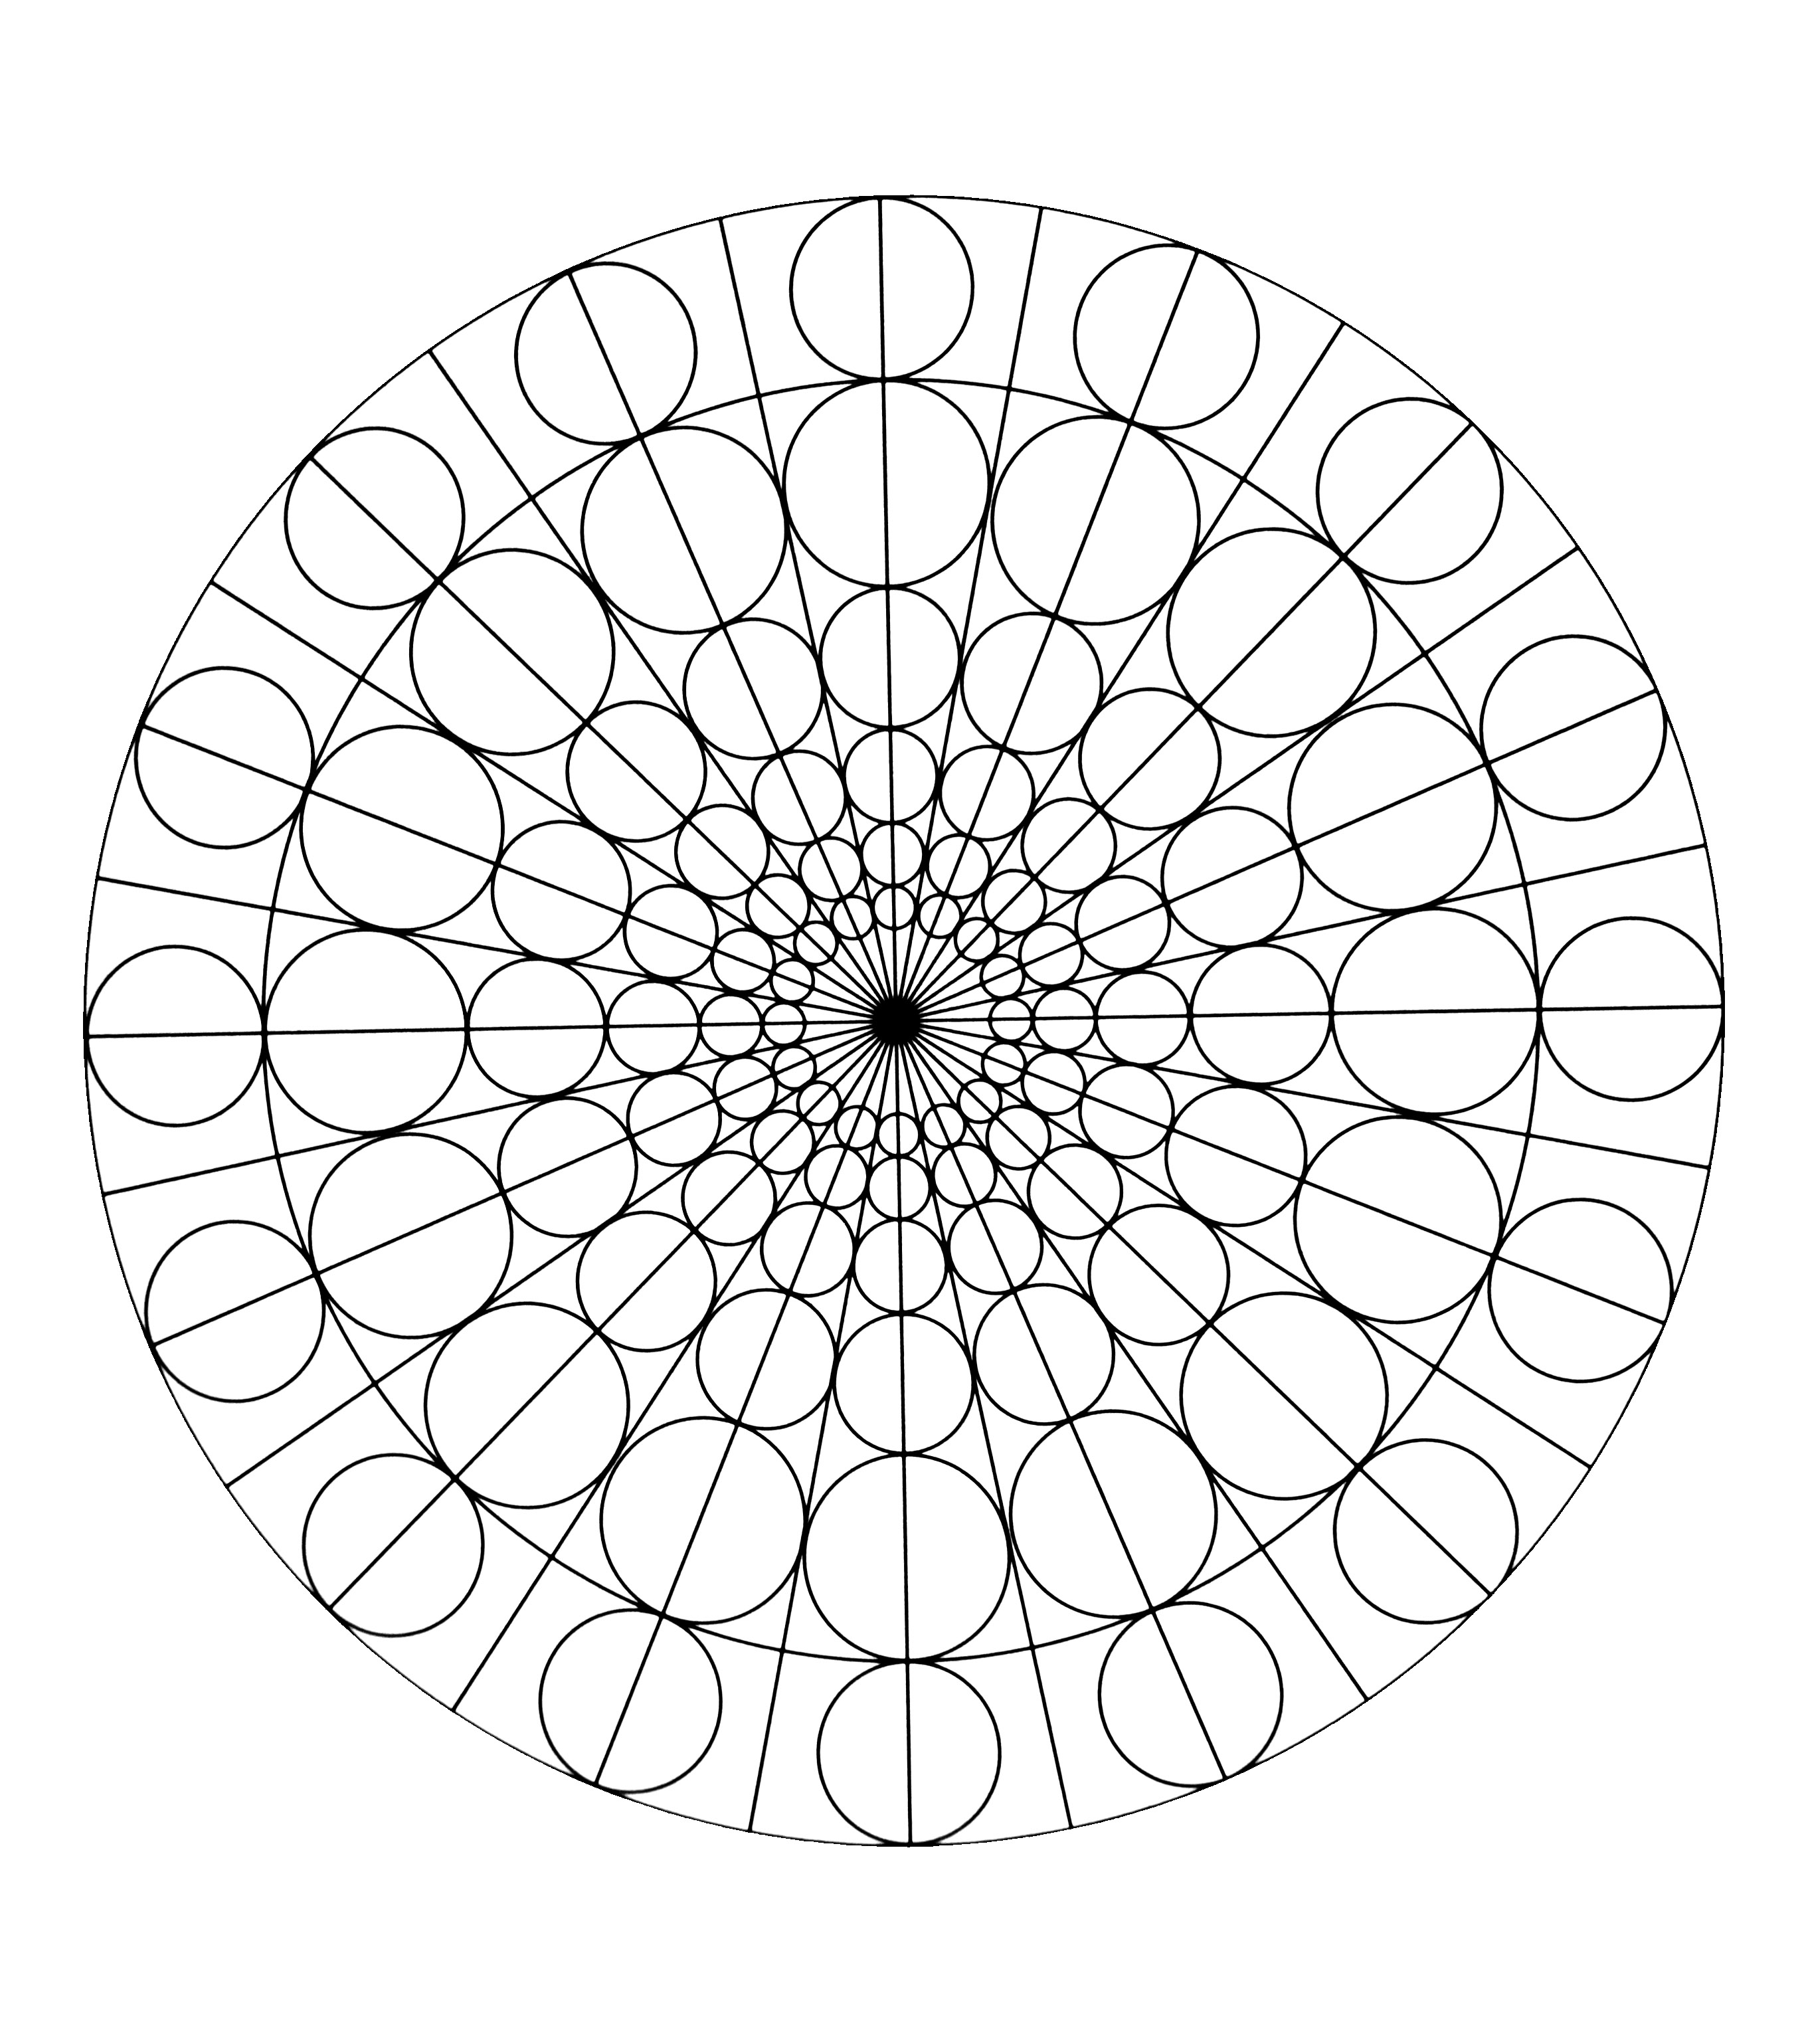 Symetric Mandala drawing : circles and straight lines